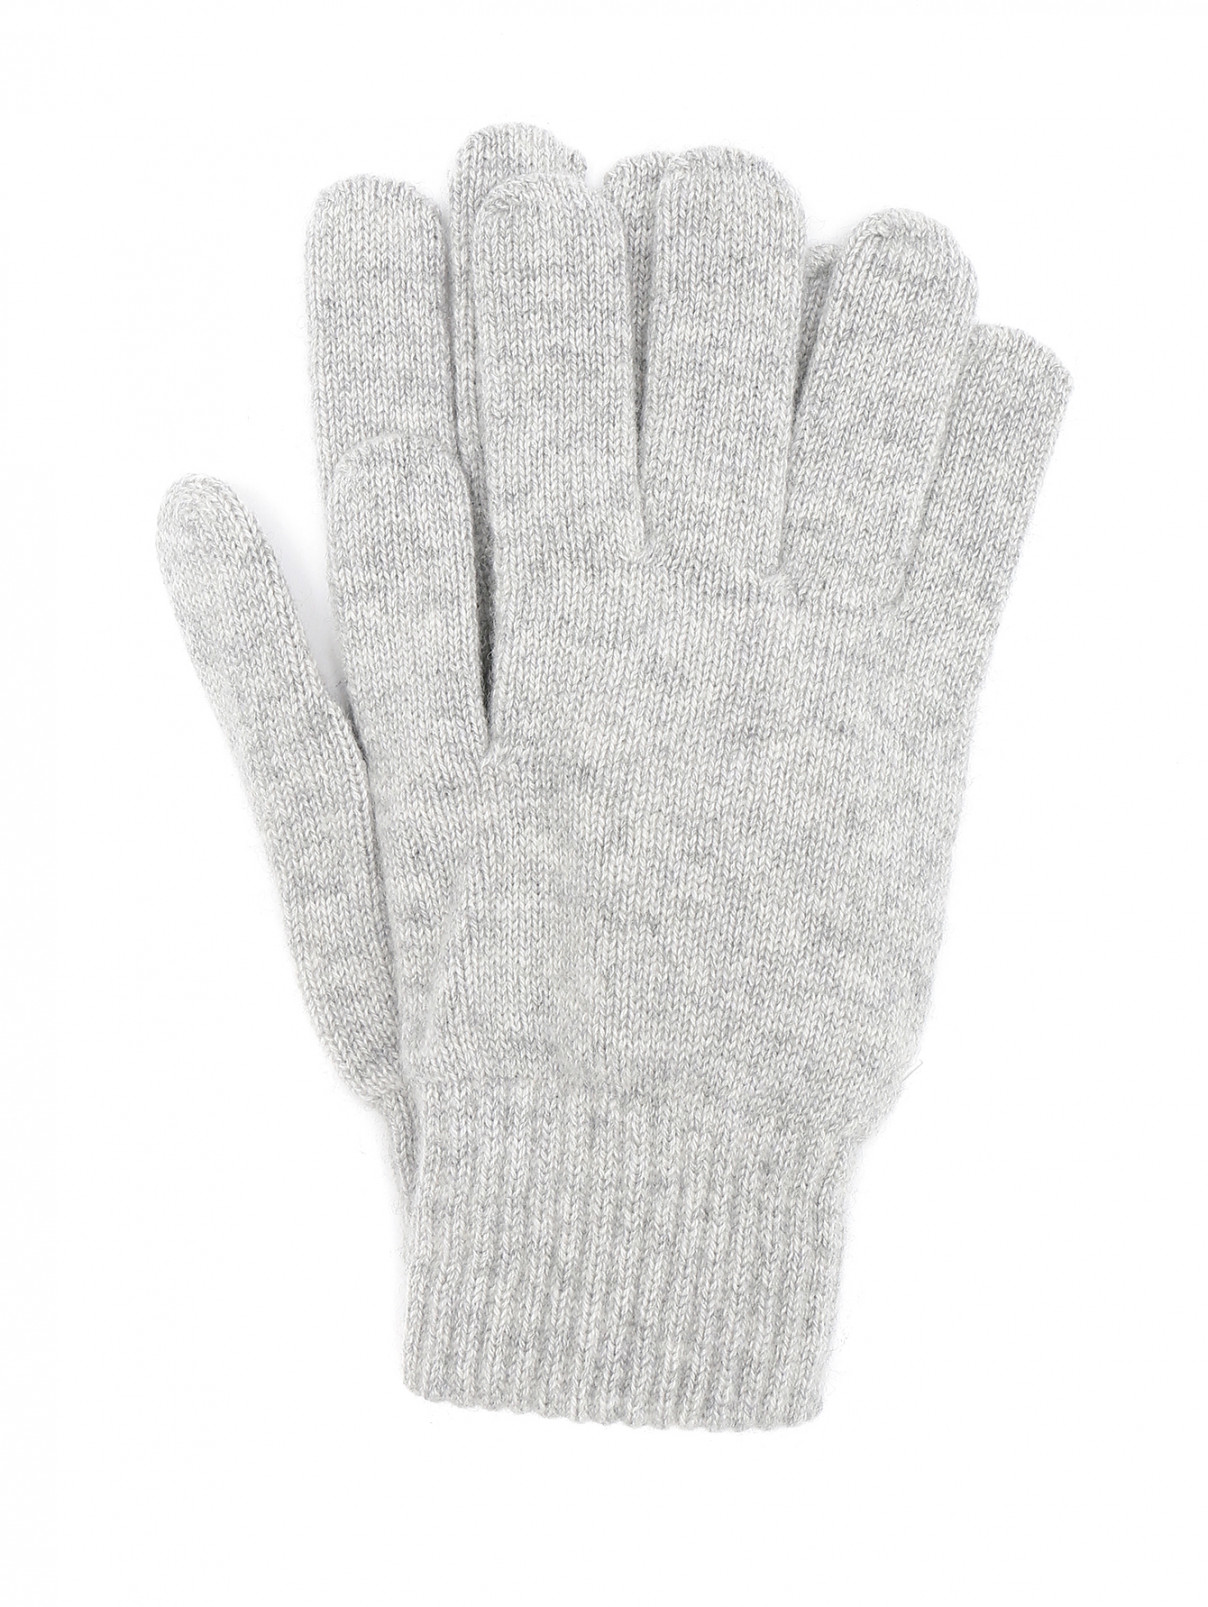 Перчатки из кашемира мелкой вязки Kangra Cashmere  –  Общий вид  – Цвет:  Серый